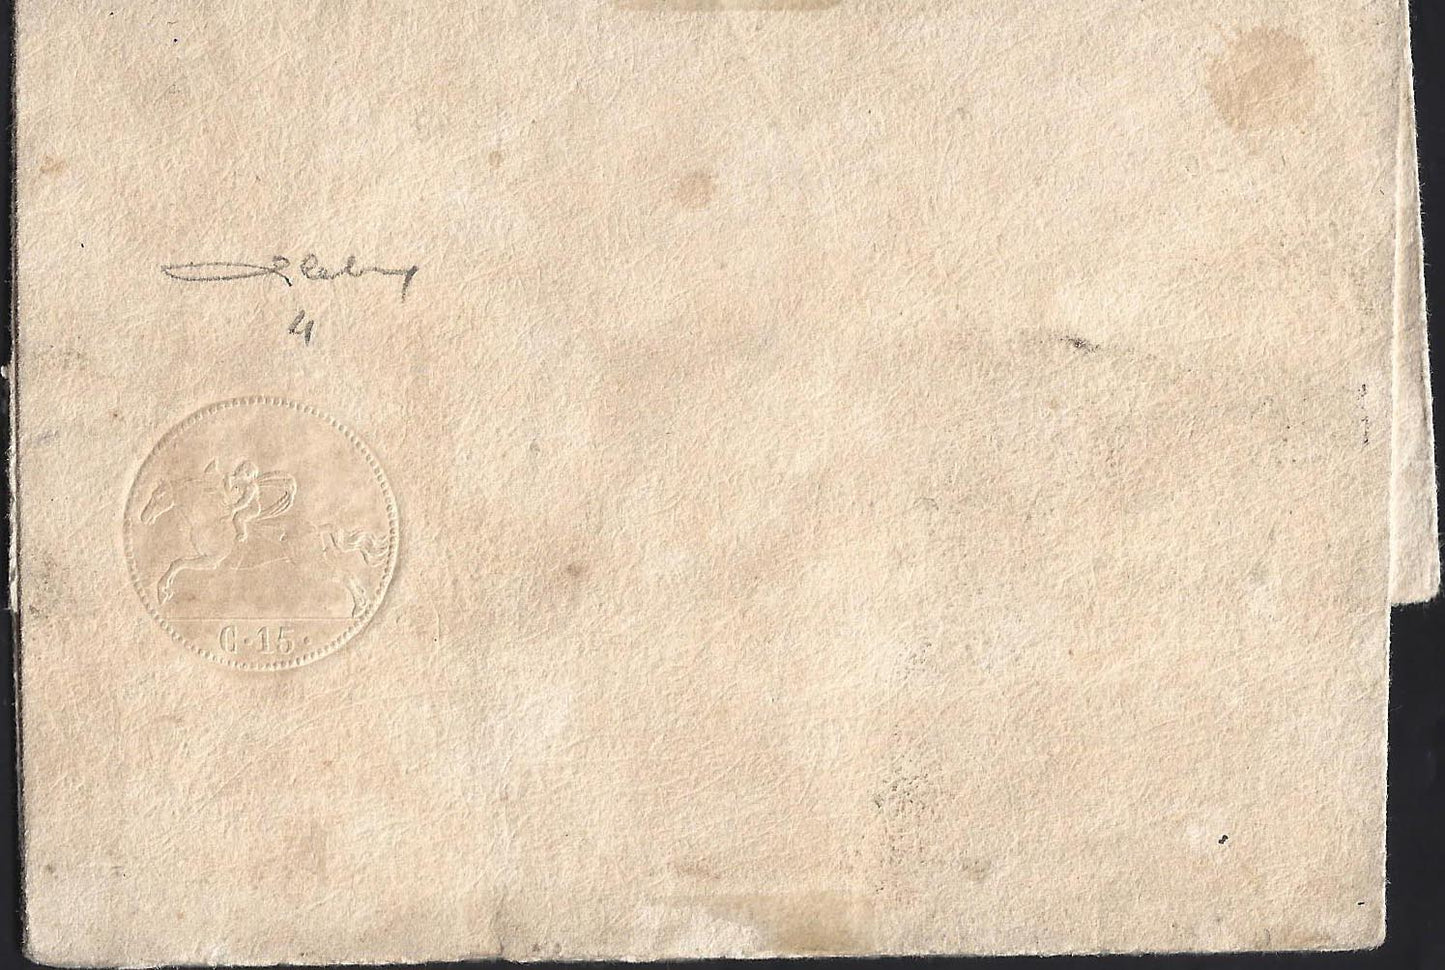 SardSP313 - 1820 - Precursori, cavallini di Sardegna II emissione, c. 15 impronta a secco molto nitida su mezzo foglio nuovo. (4).